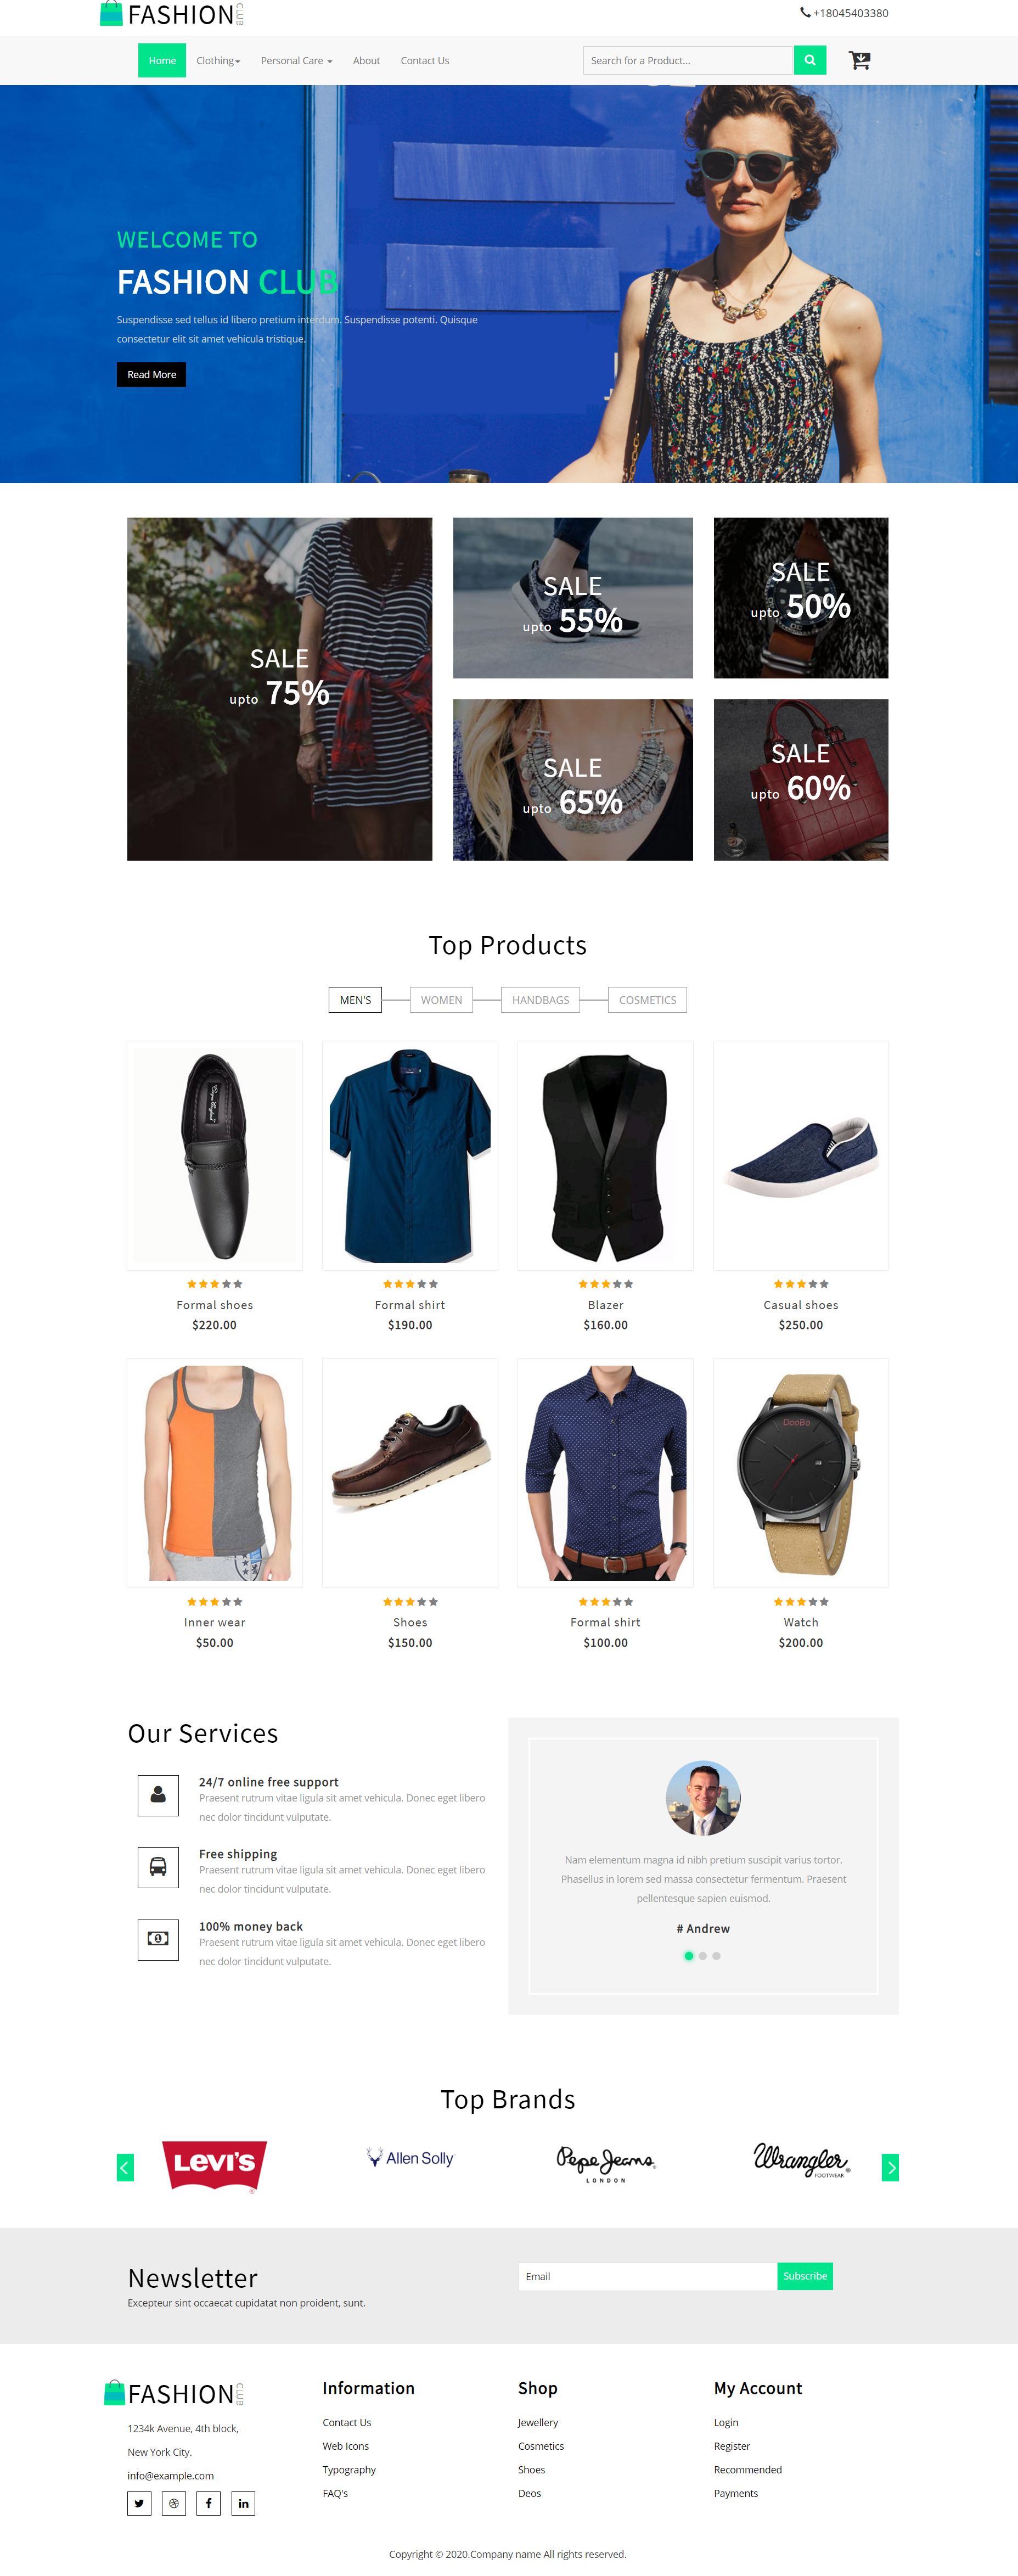 HTML5绿色宽屏样式时尚品牌服饰企业网站模板代码下载